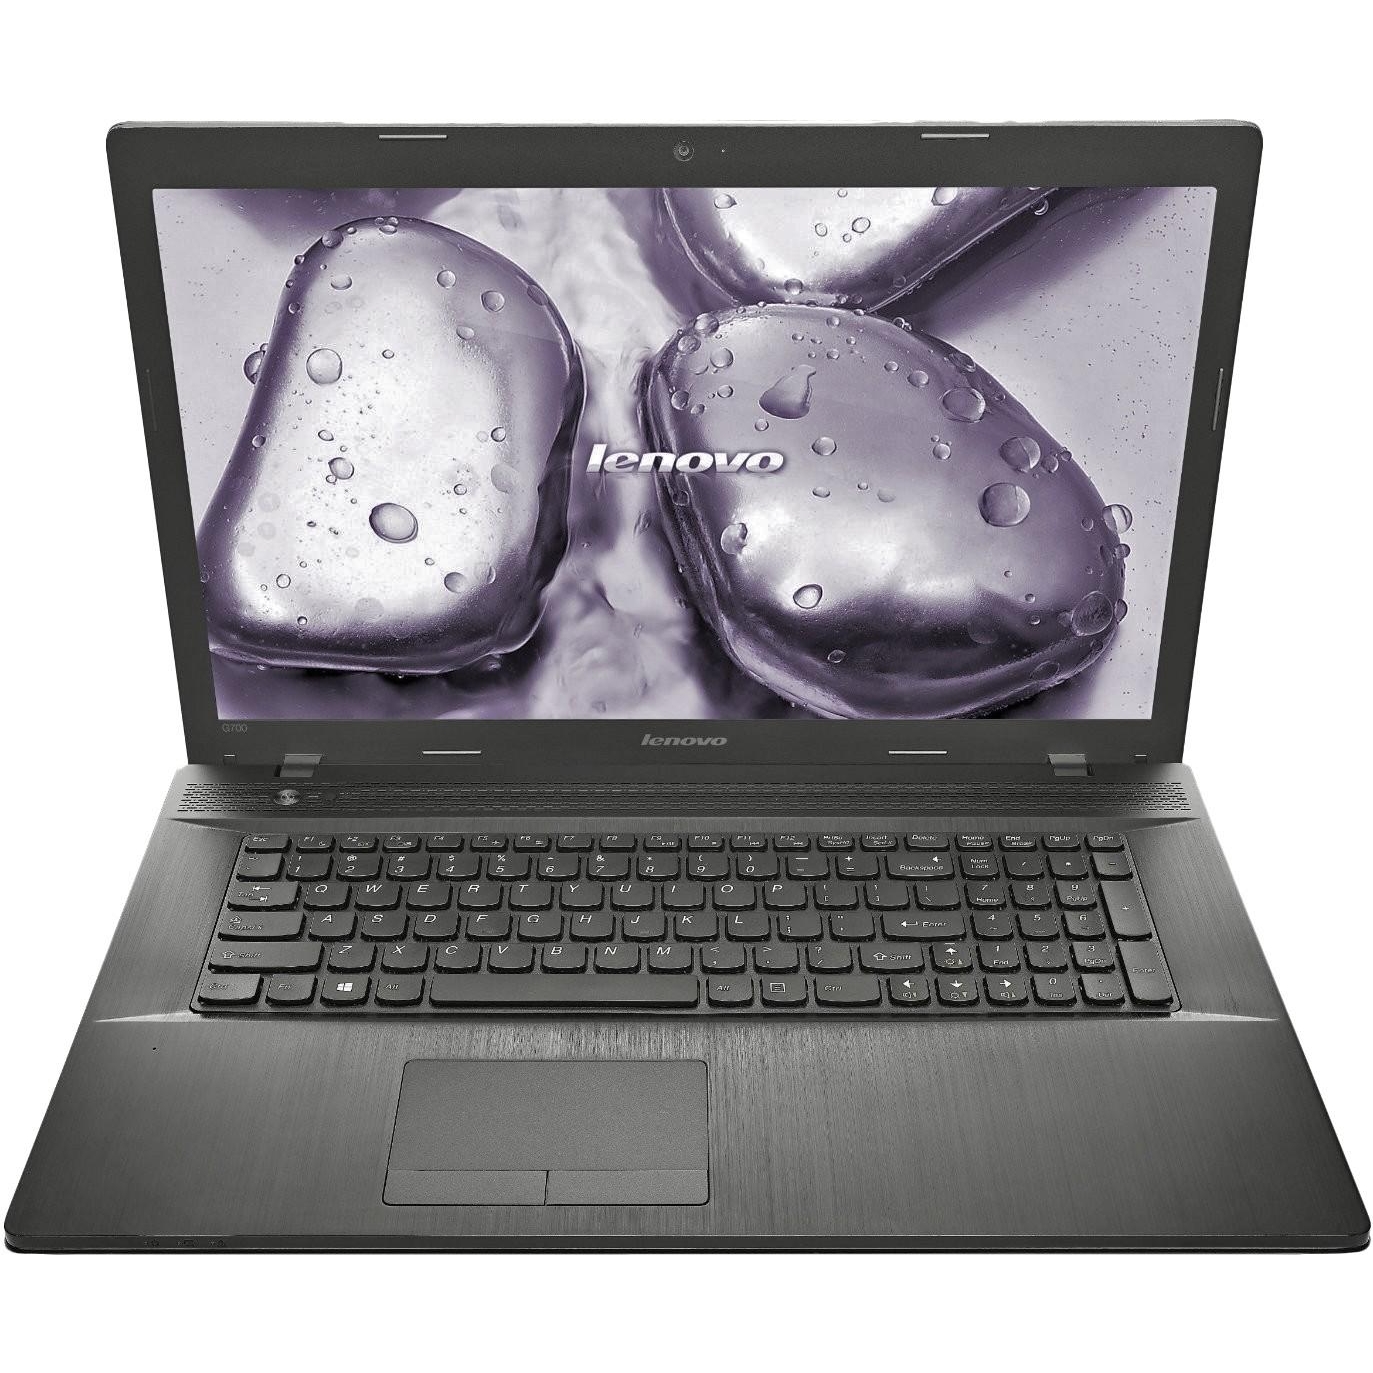 Ноутбук Lenovo G700 Купить Украина